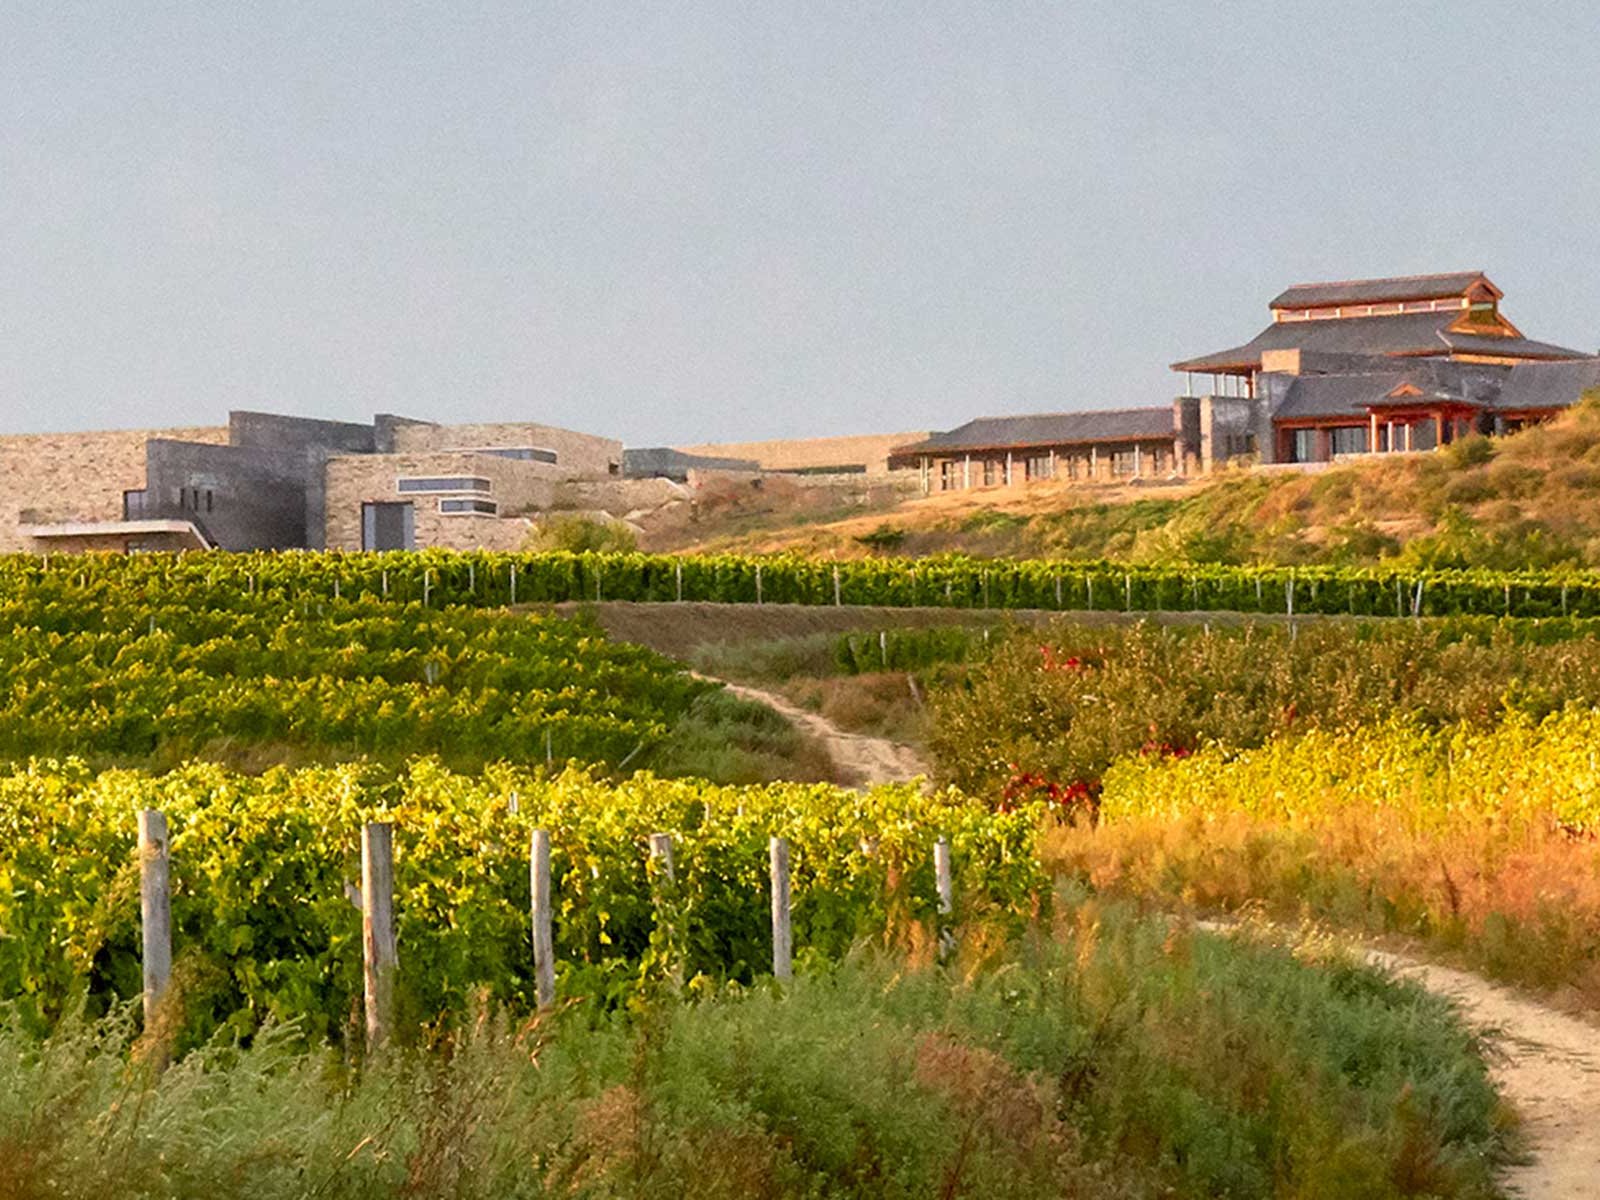 Das Weingut und die Villa der Domaines Barons de Rothschild in Shandong, China.